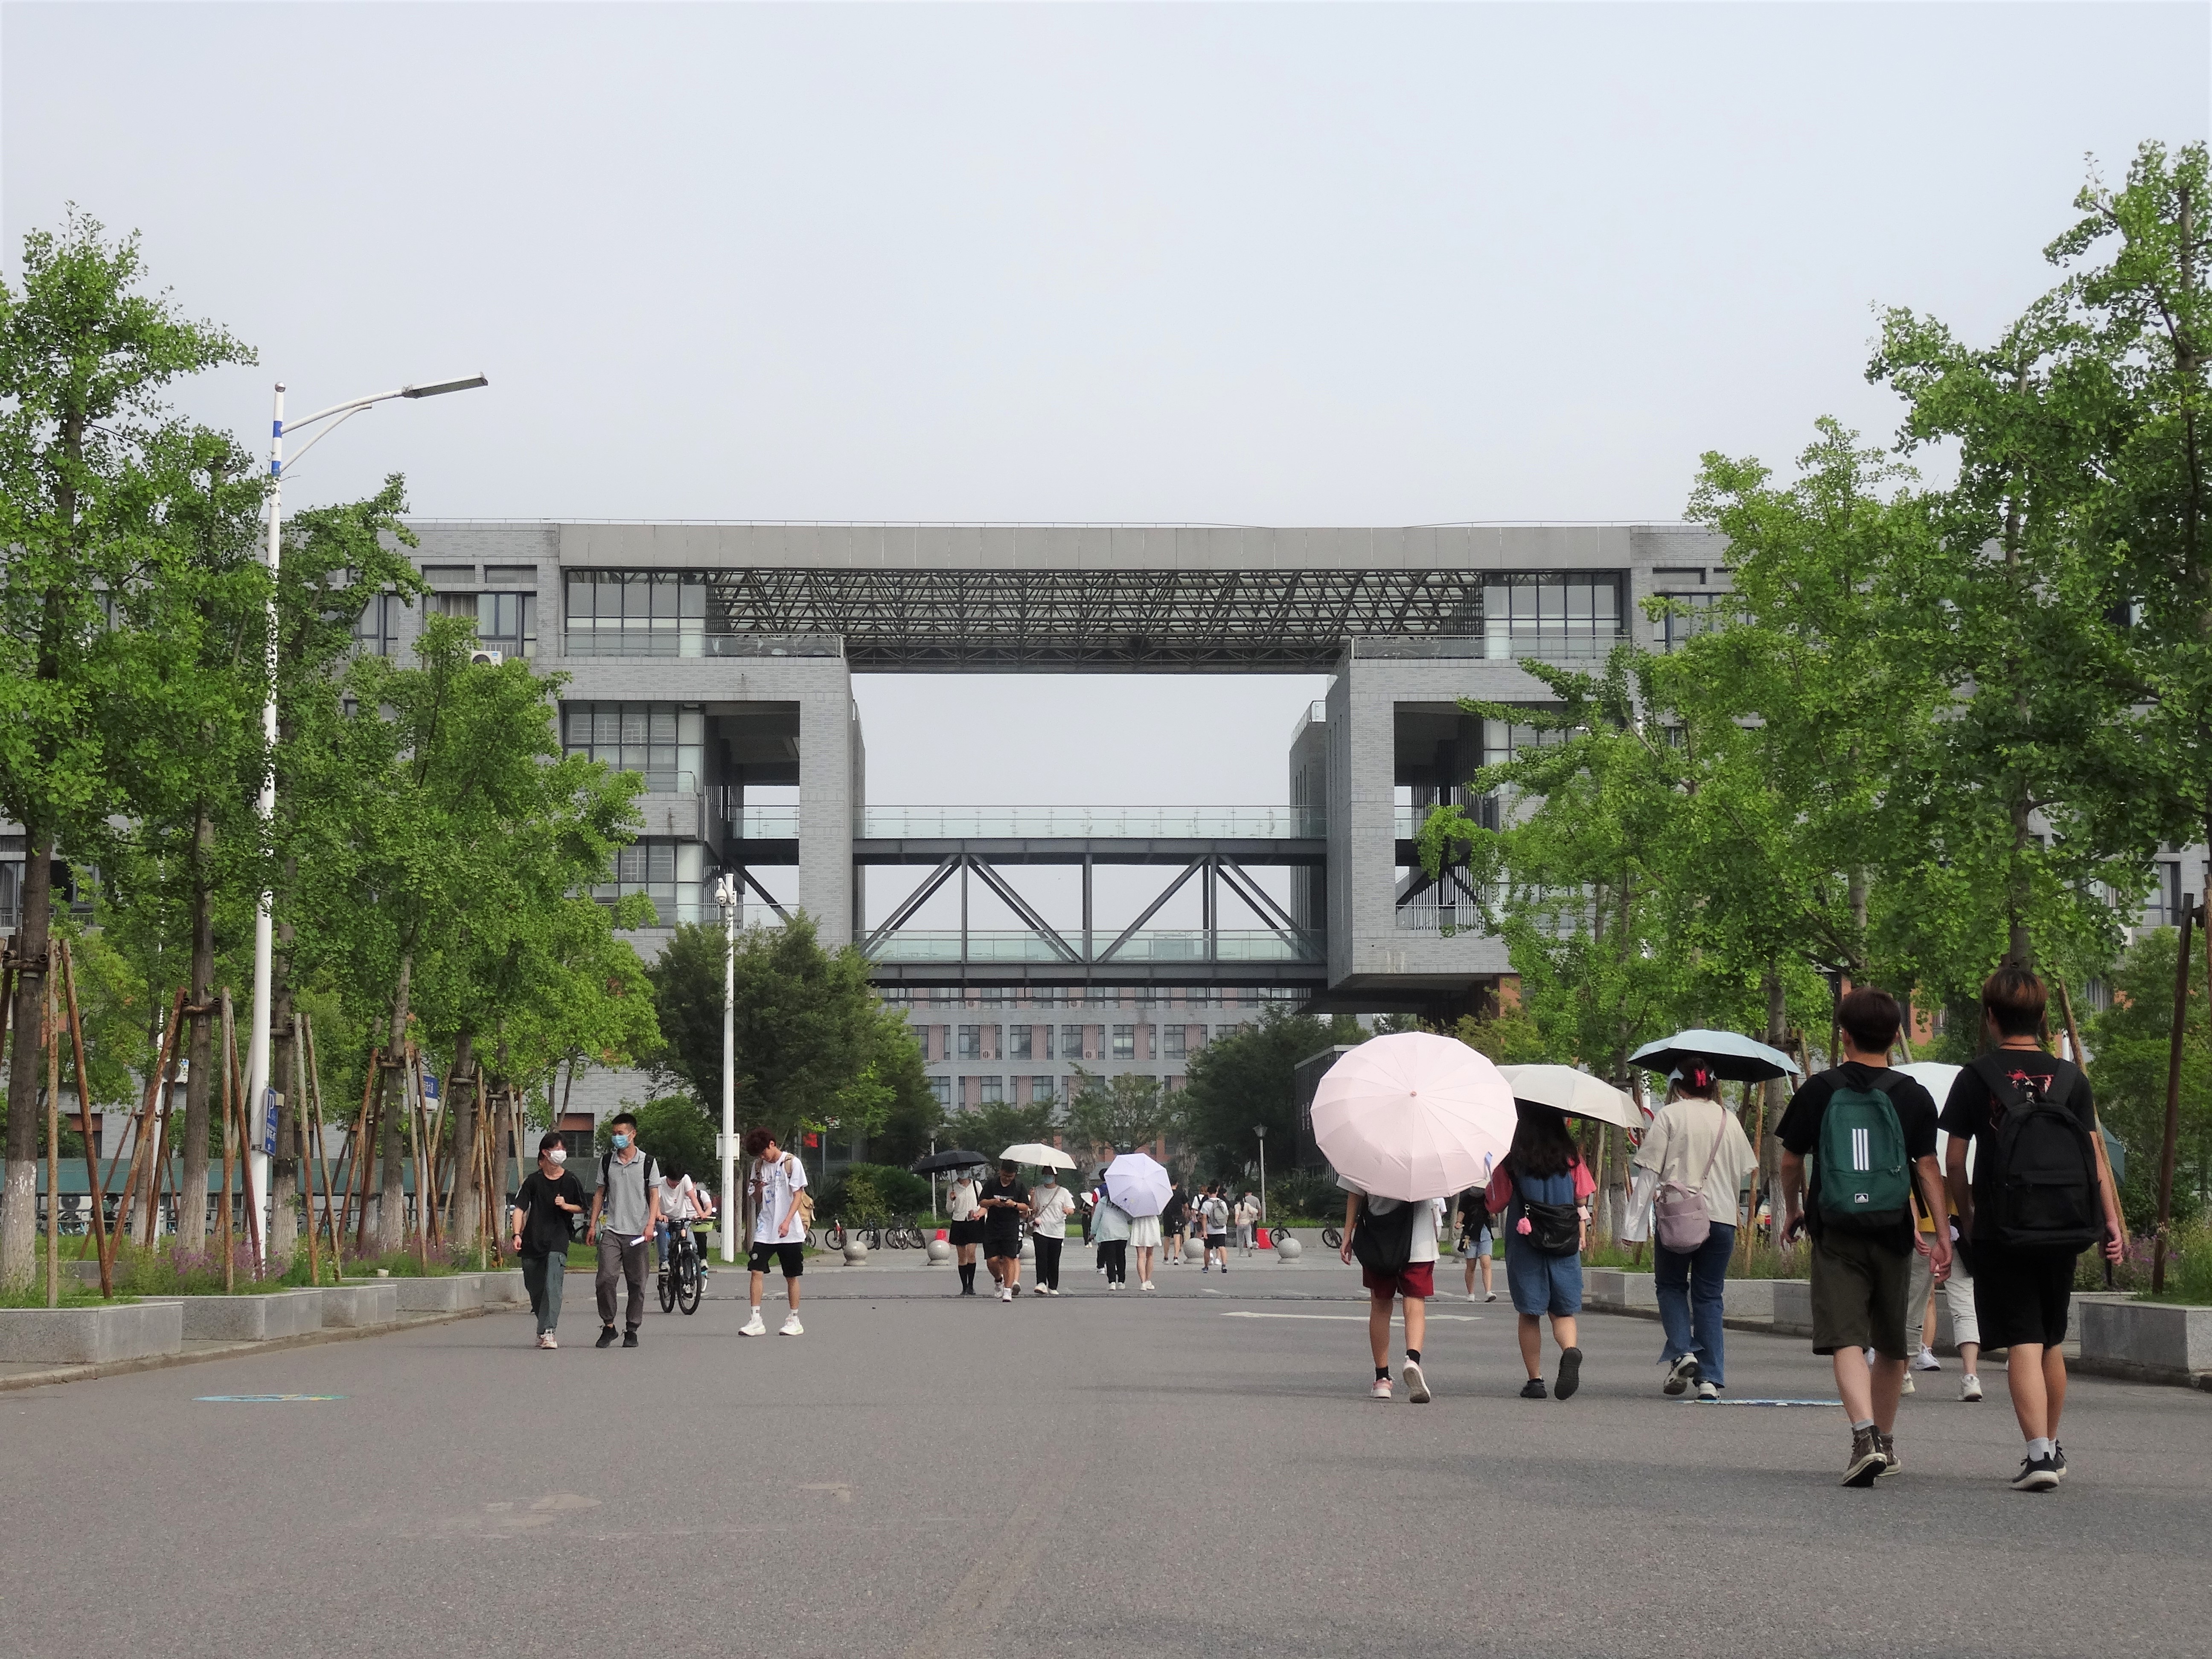 长江大学武汉校区图片